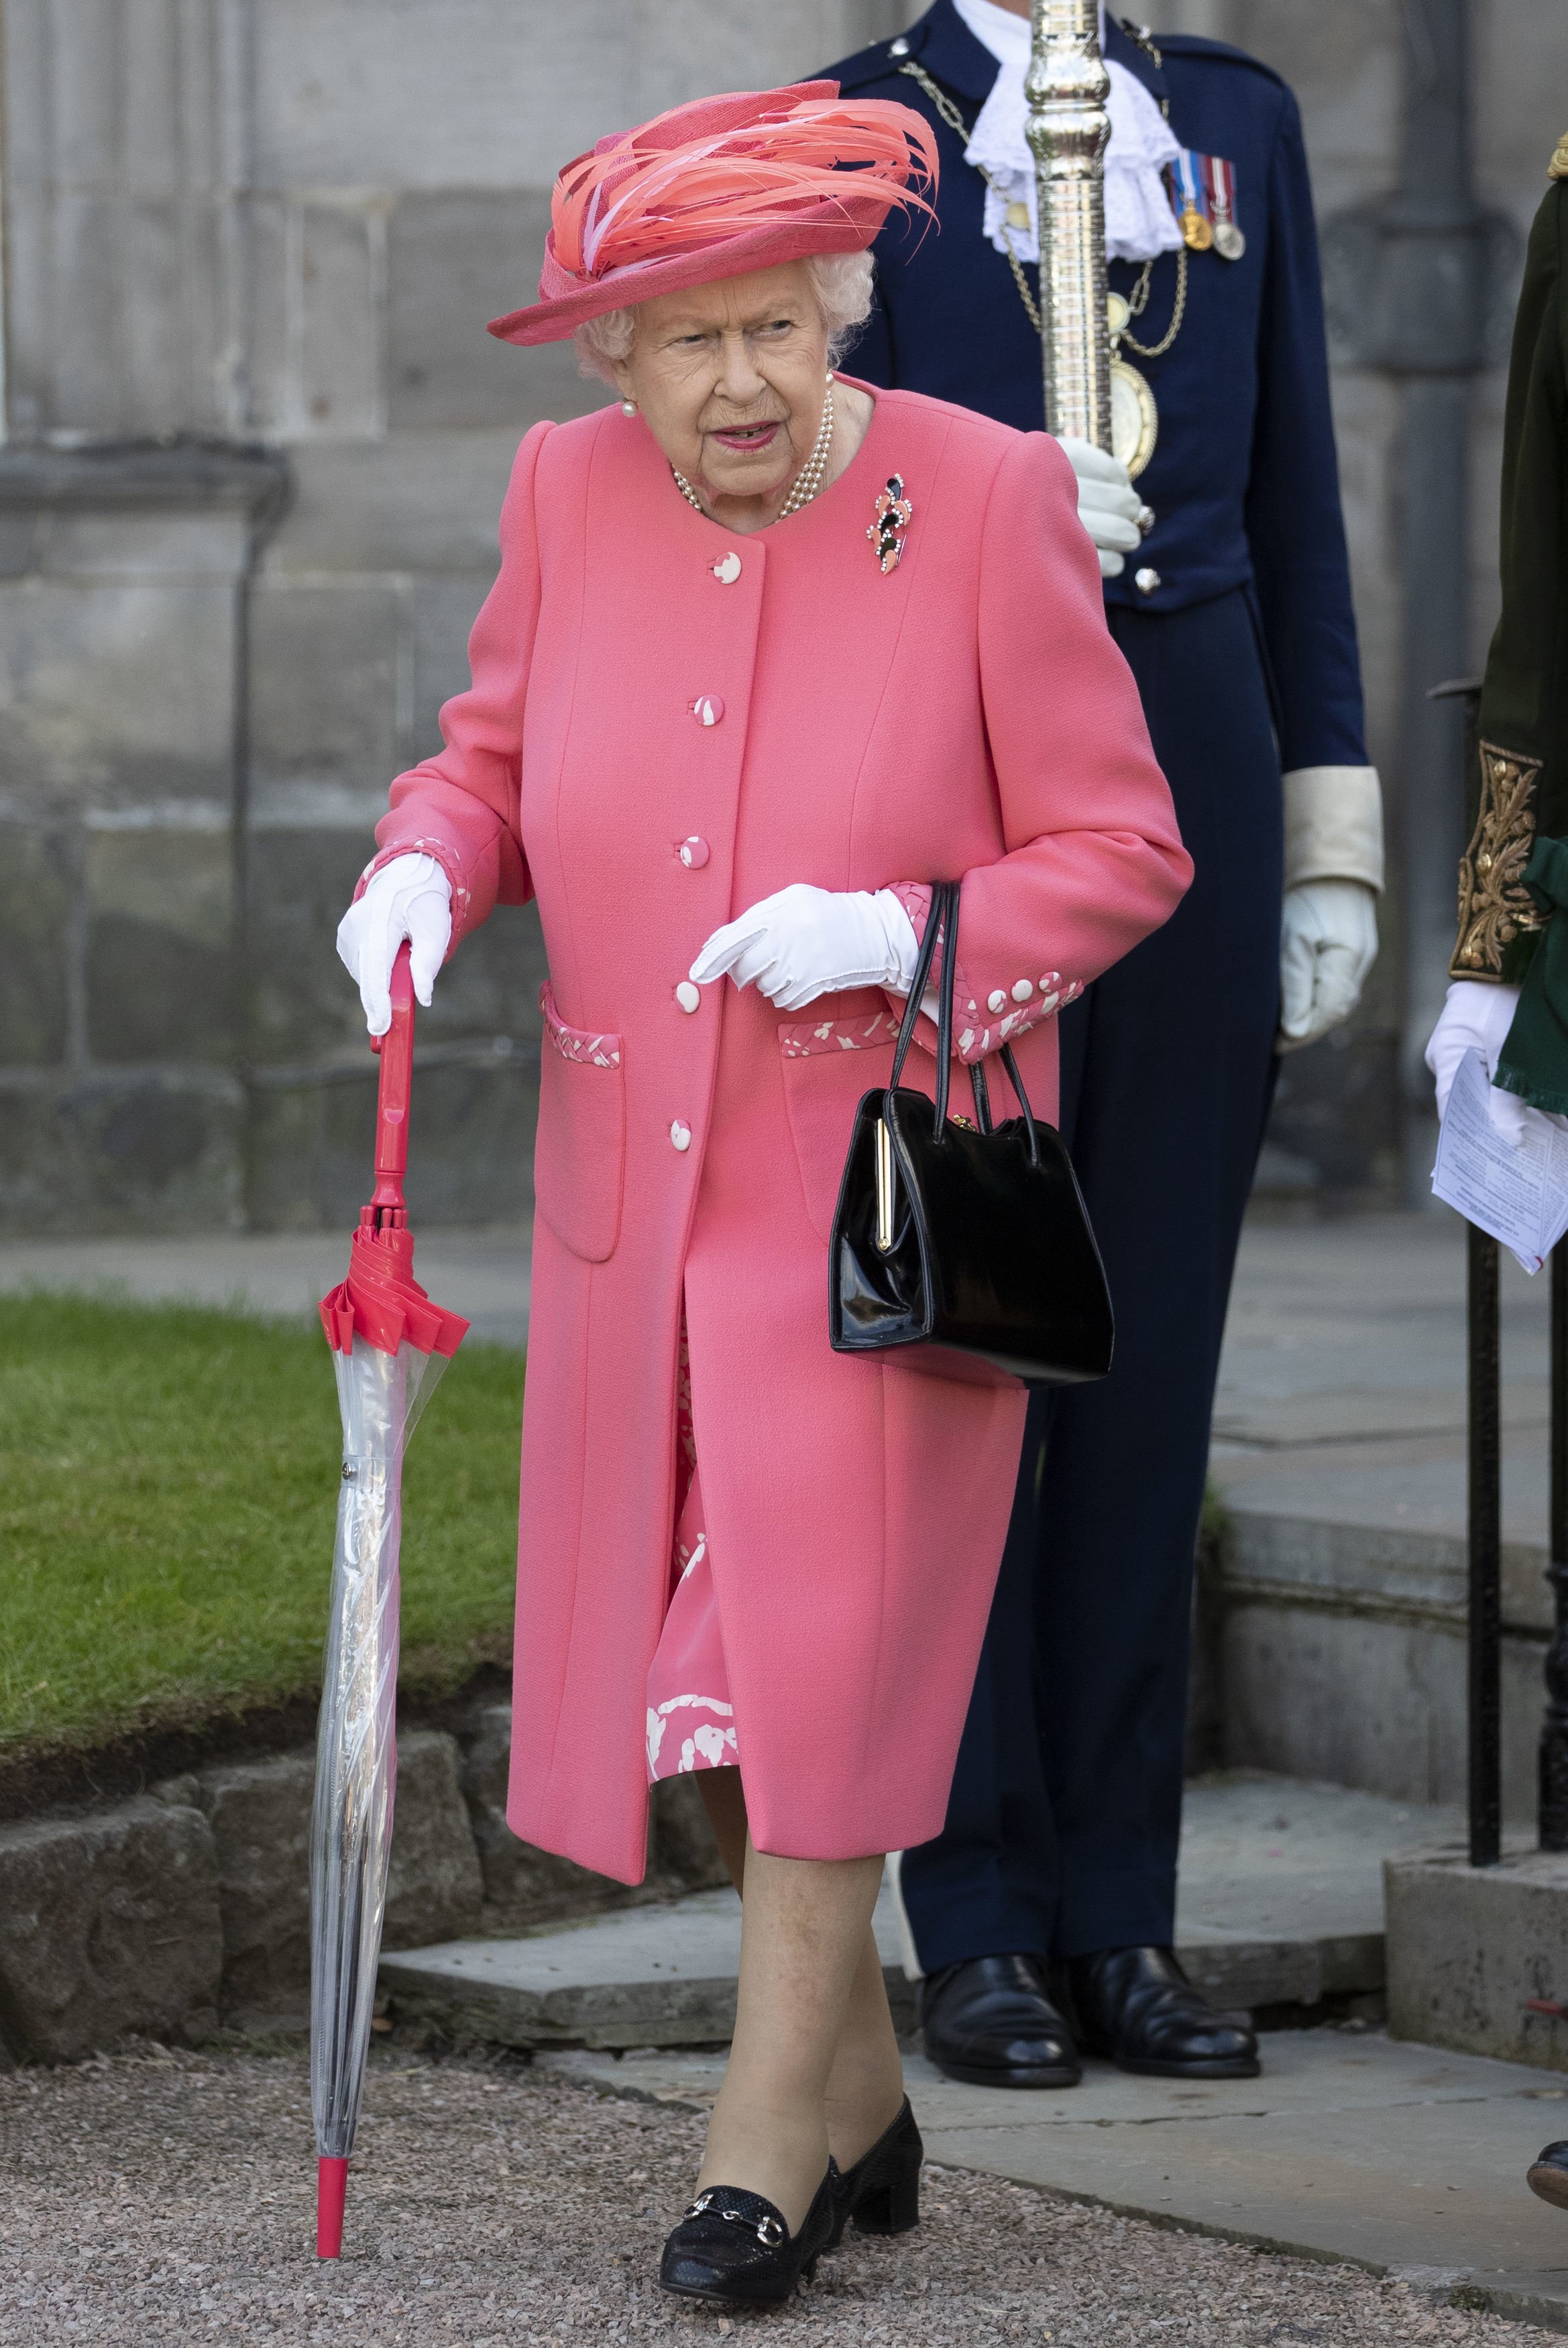 La reine Elizabeth participe à une Garden Party au Palais de Holyroodhouse en Ecosse en juillet 2019 | Photo : Getty Images